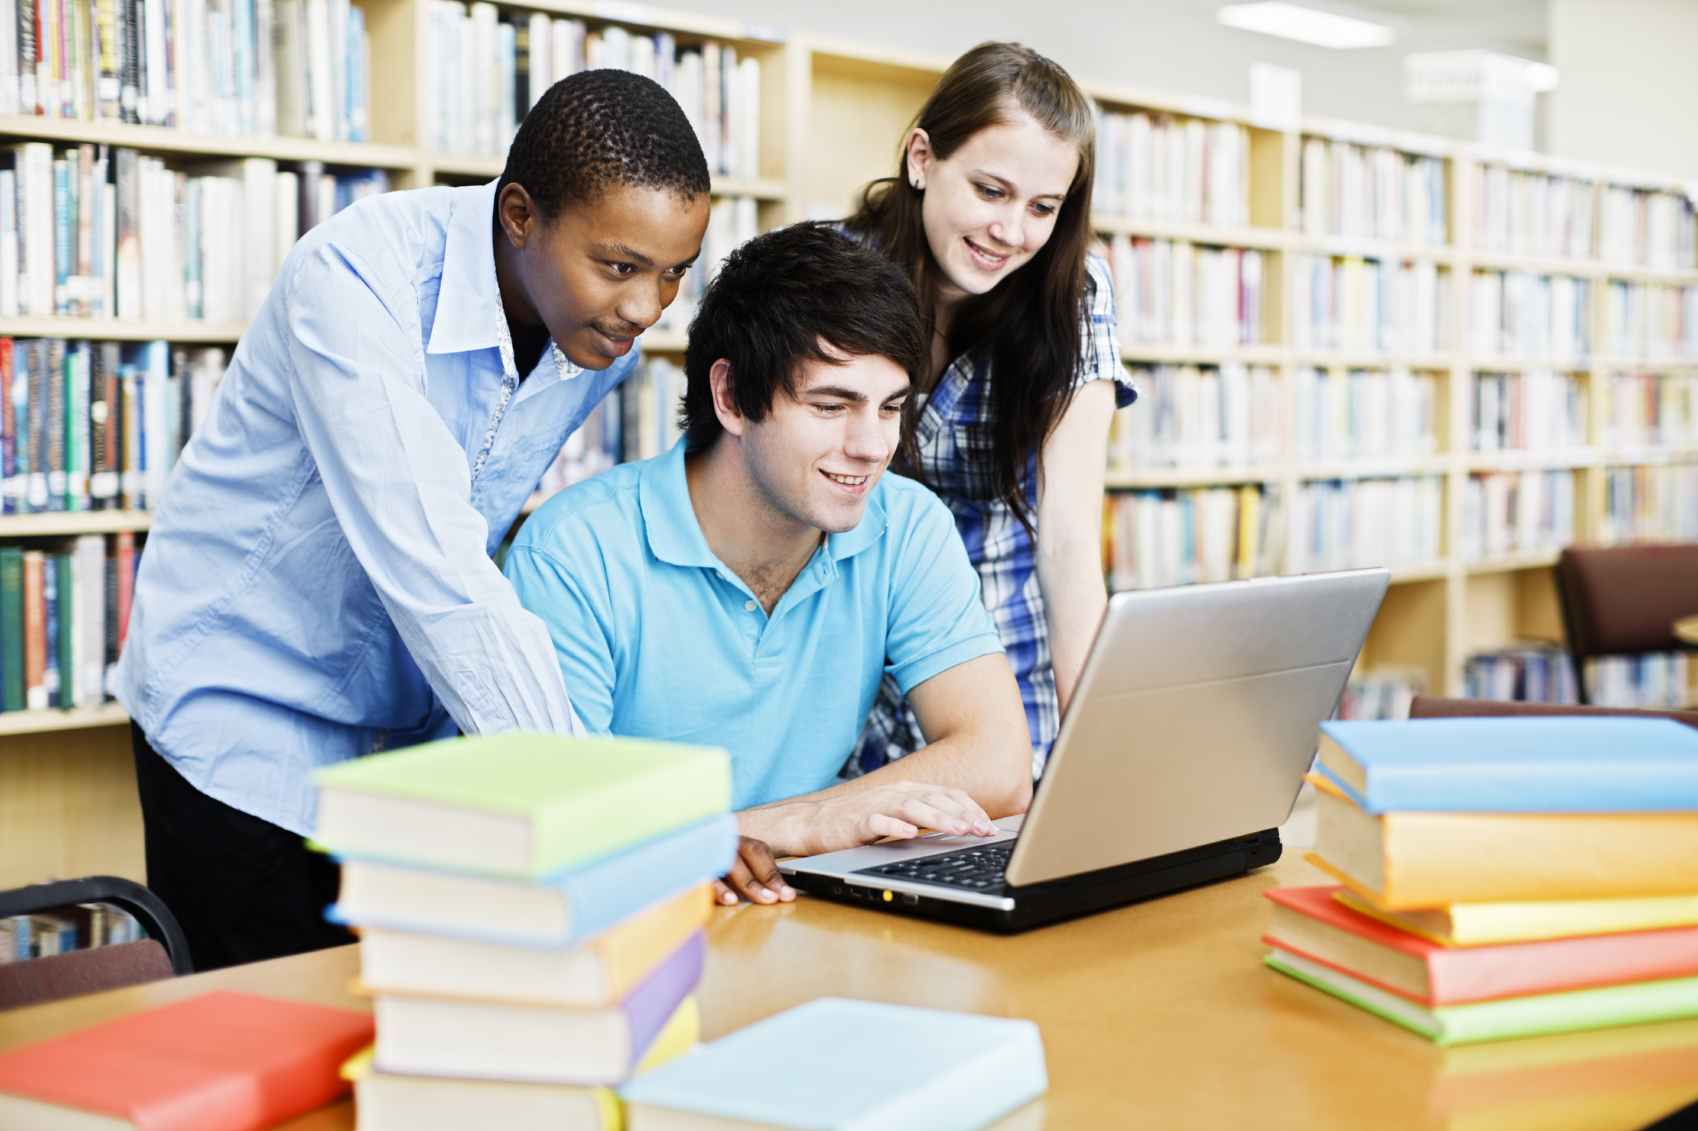 University dissertations. Студенты в библиотеке. Учащиеся студенты. Ученики в библиотеке. Студенты за компьютером в библиотеке.